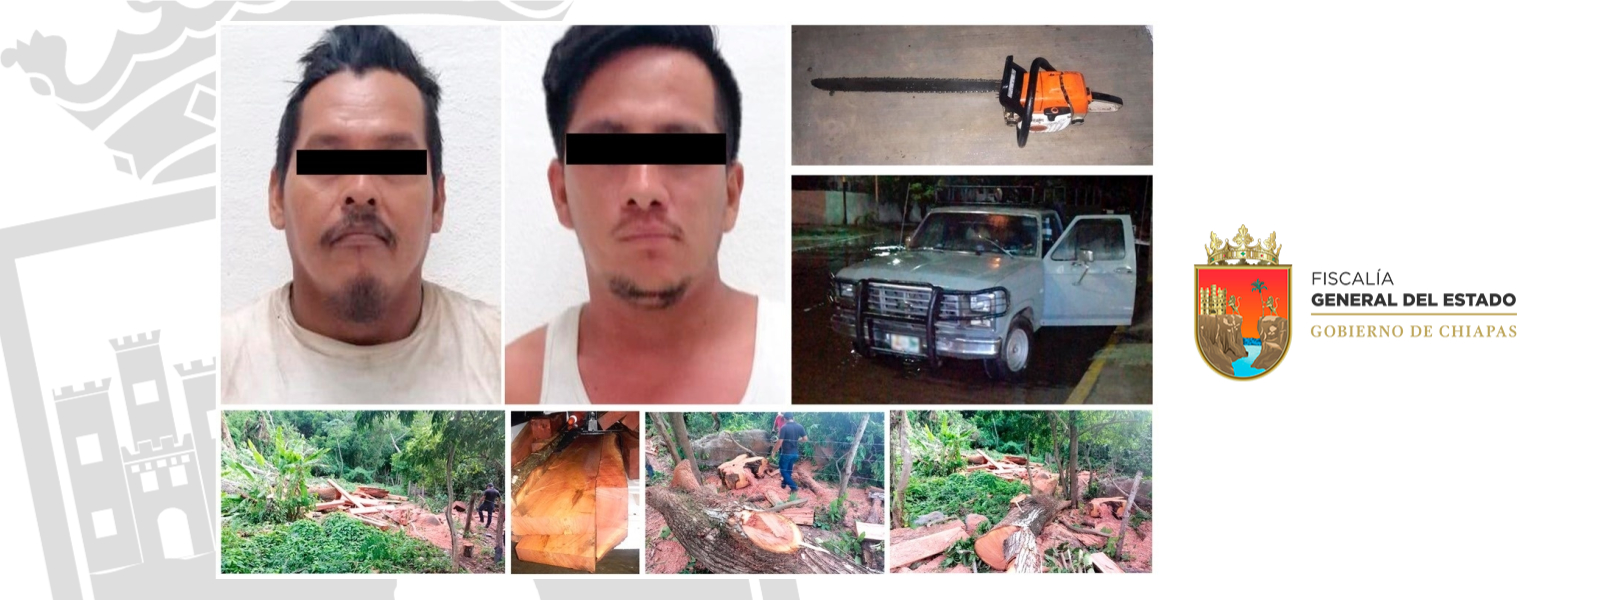 FOTO Chiapas sentencia a 2 hombres a sembrar árboles por ecocidio (Fiscalía de Chiapas)